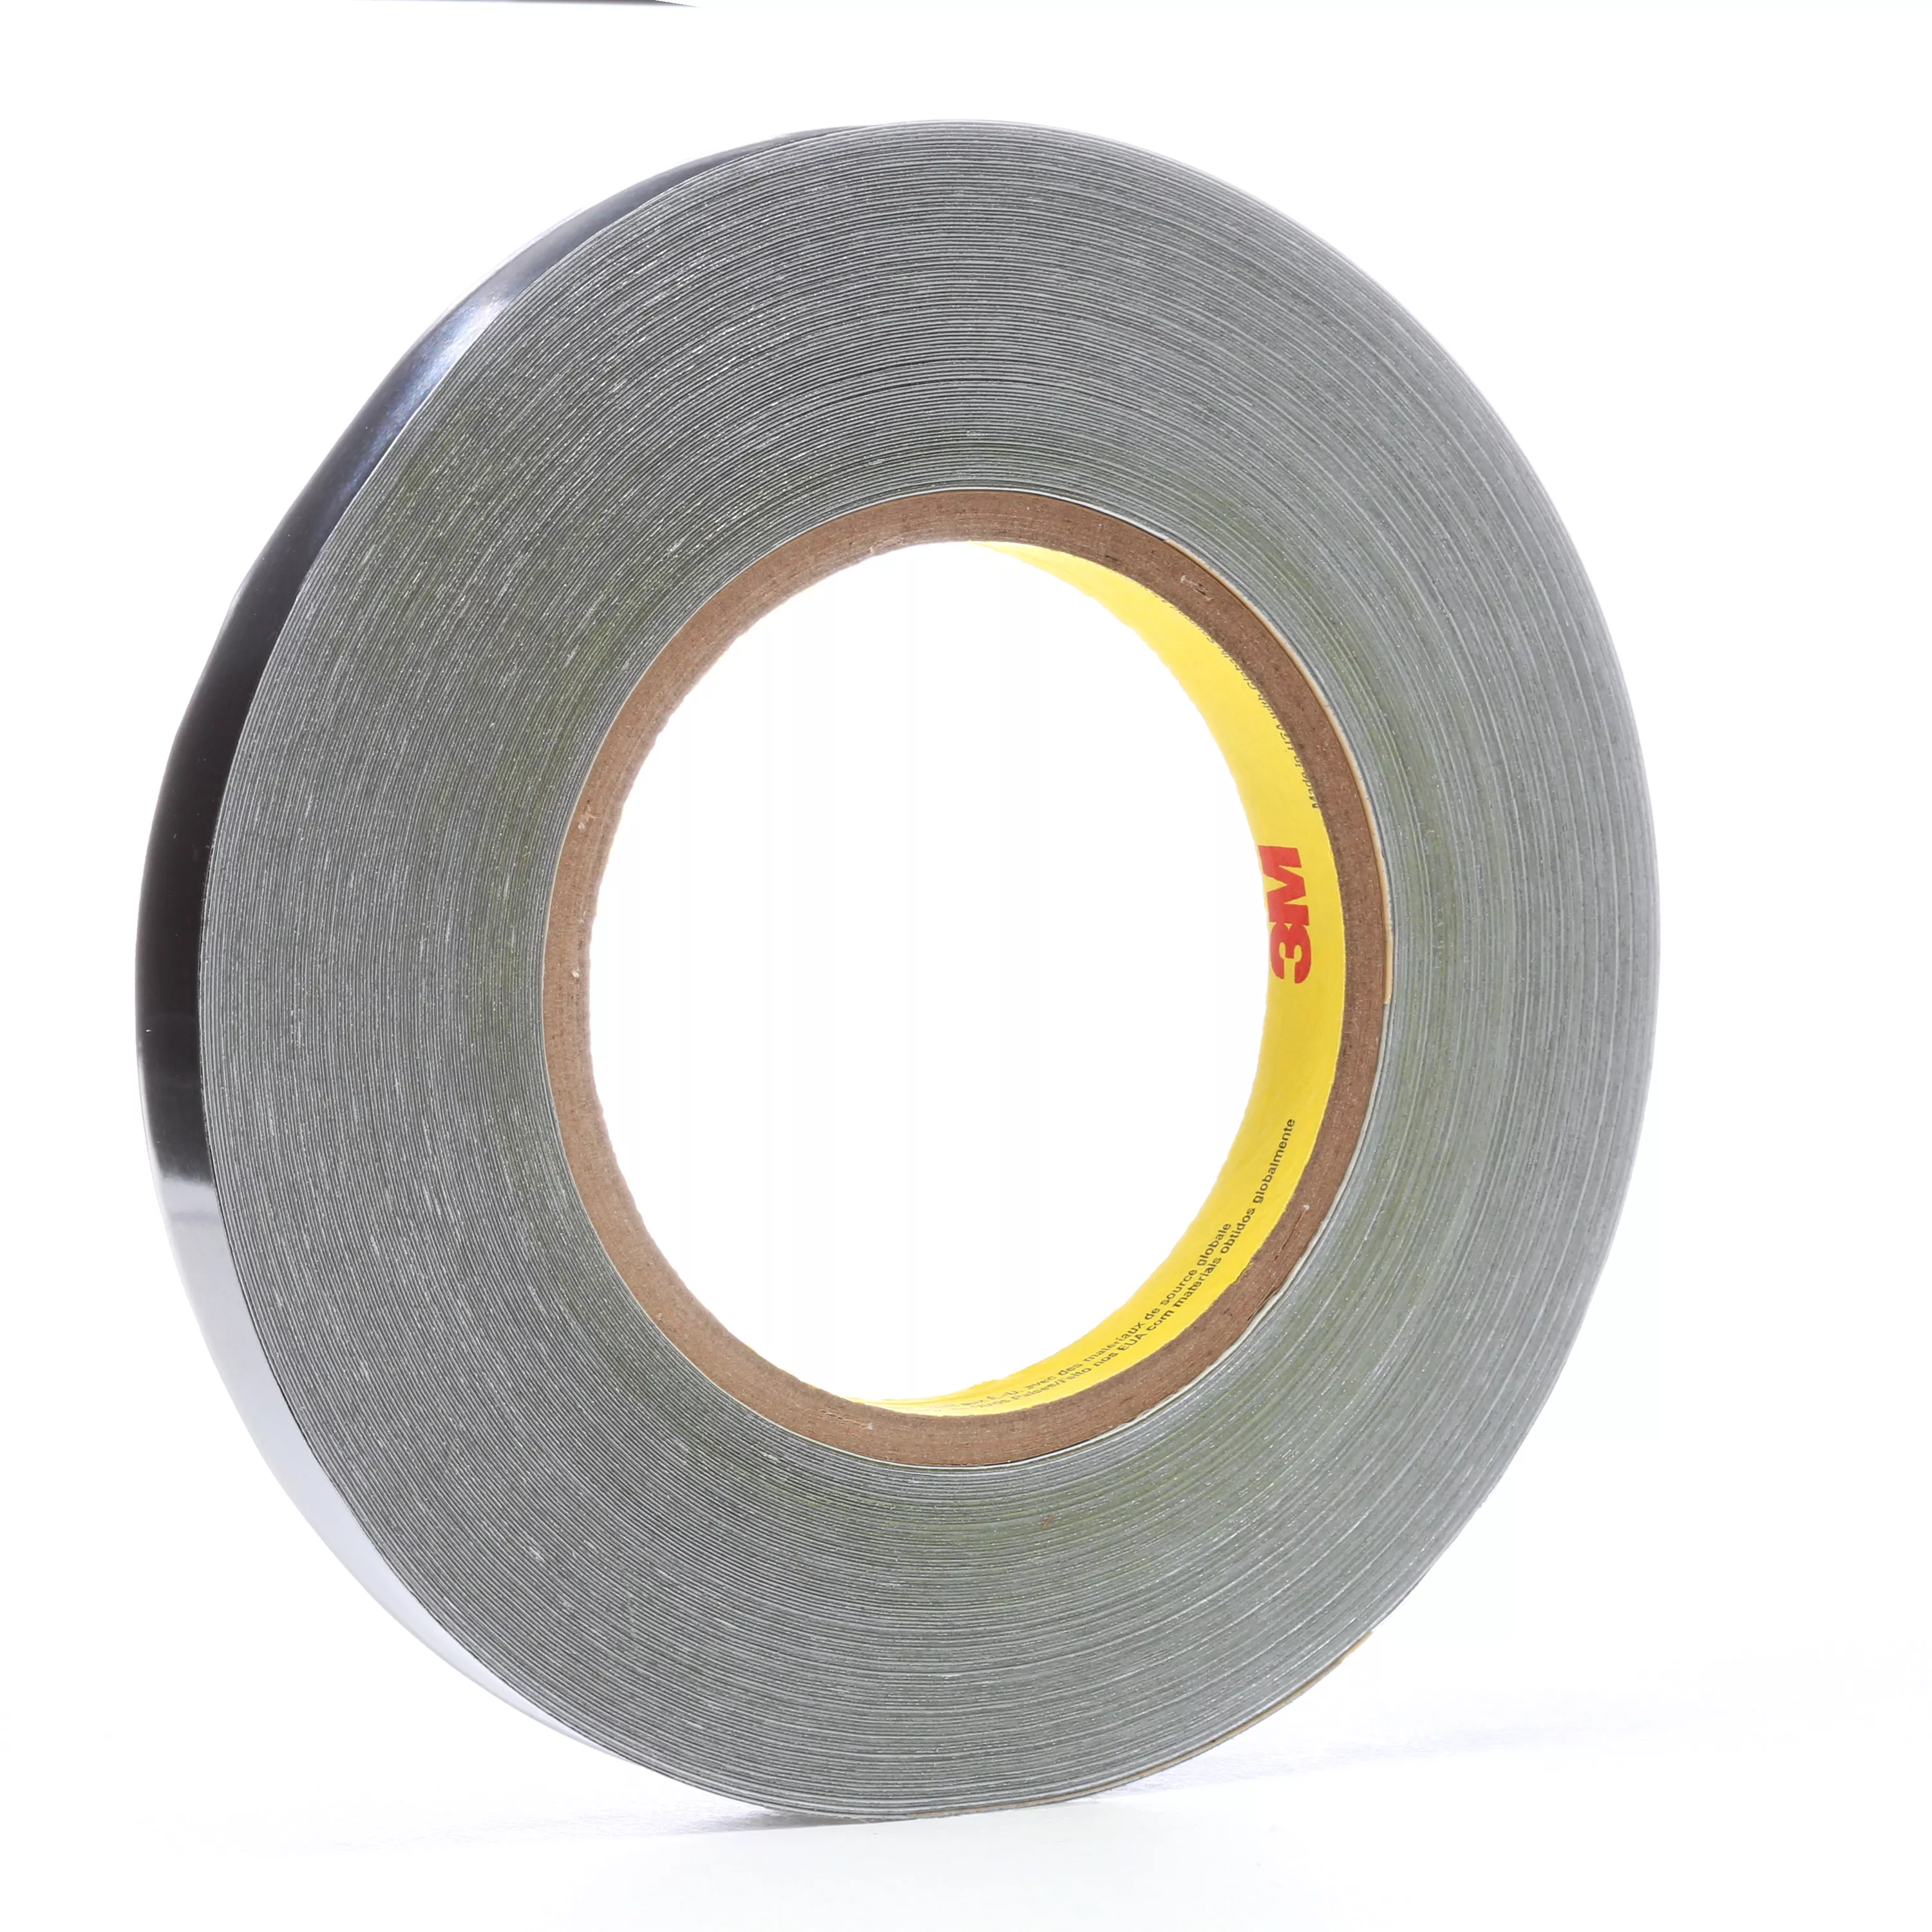 3M™ Lead Foil Tape 420, Dark Silver, 1/2 in x 36 yd, 6.8 mil, 18
Roll/Case